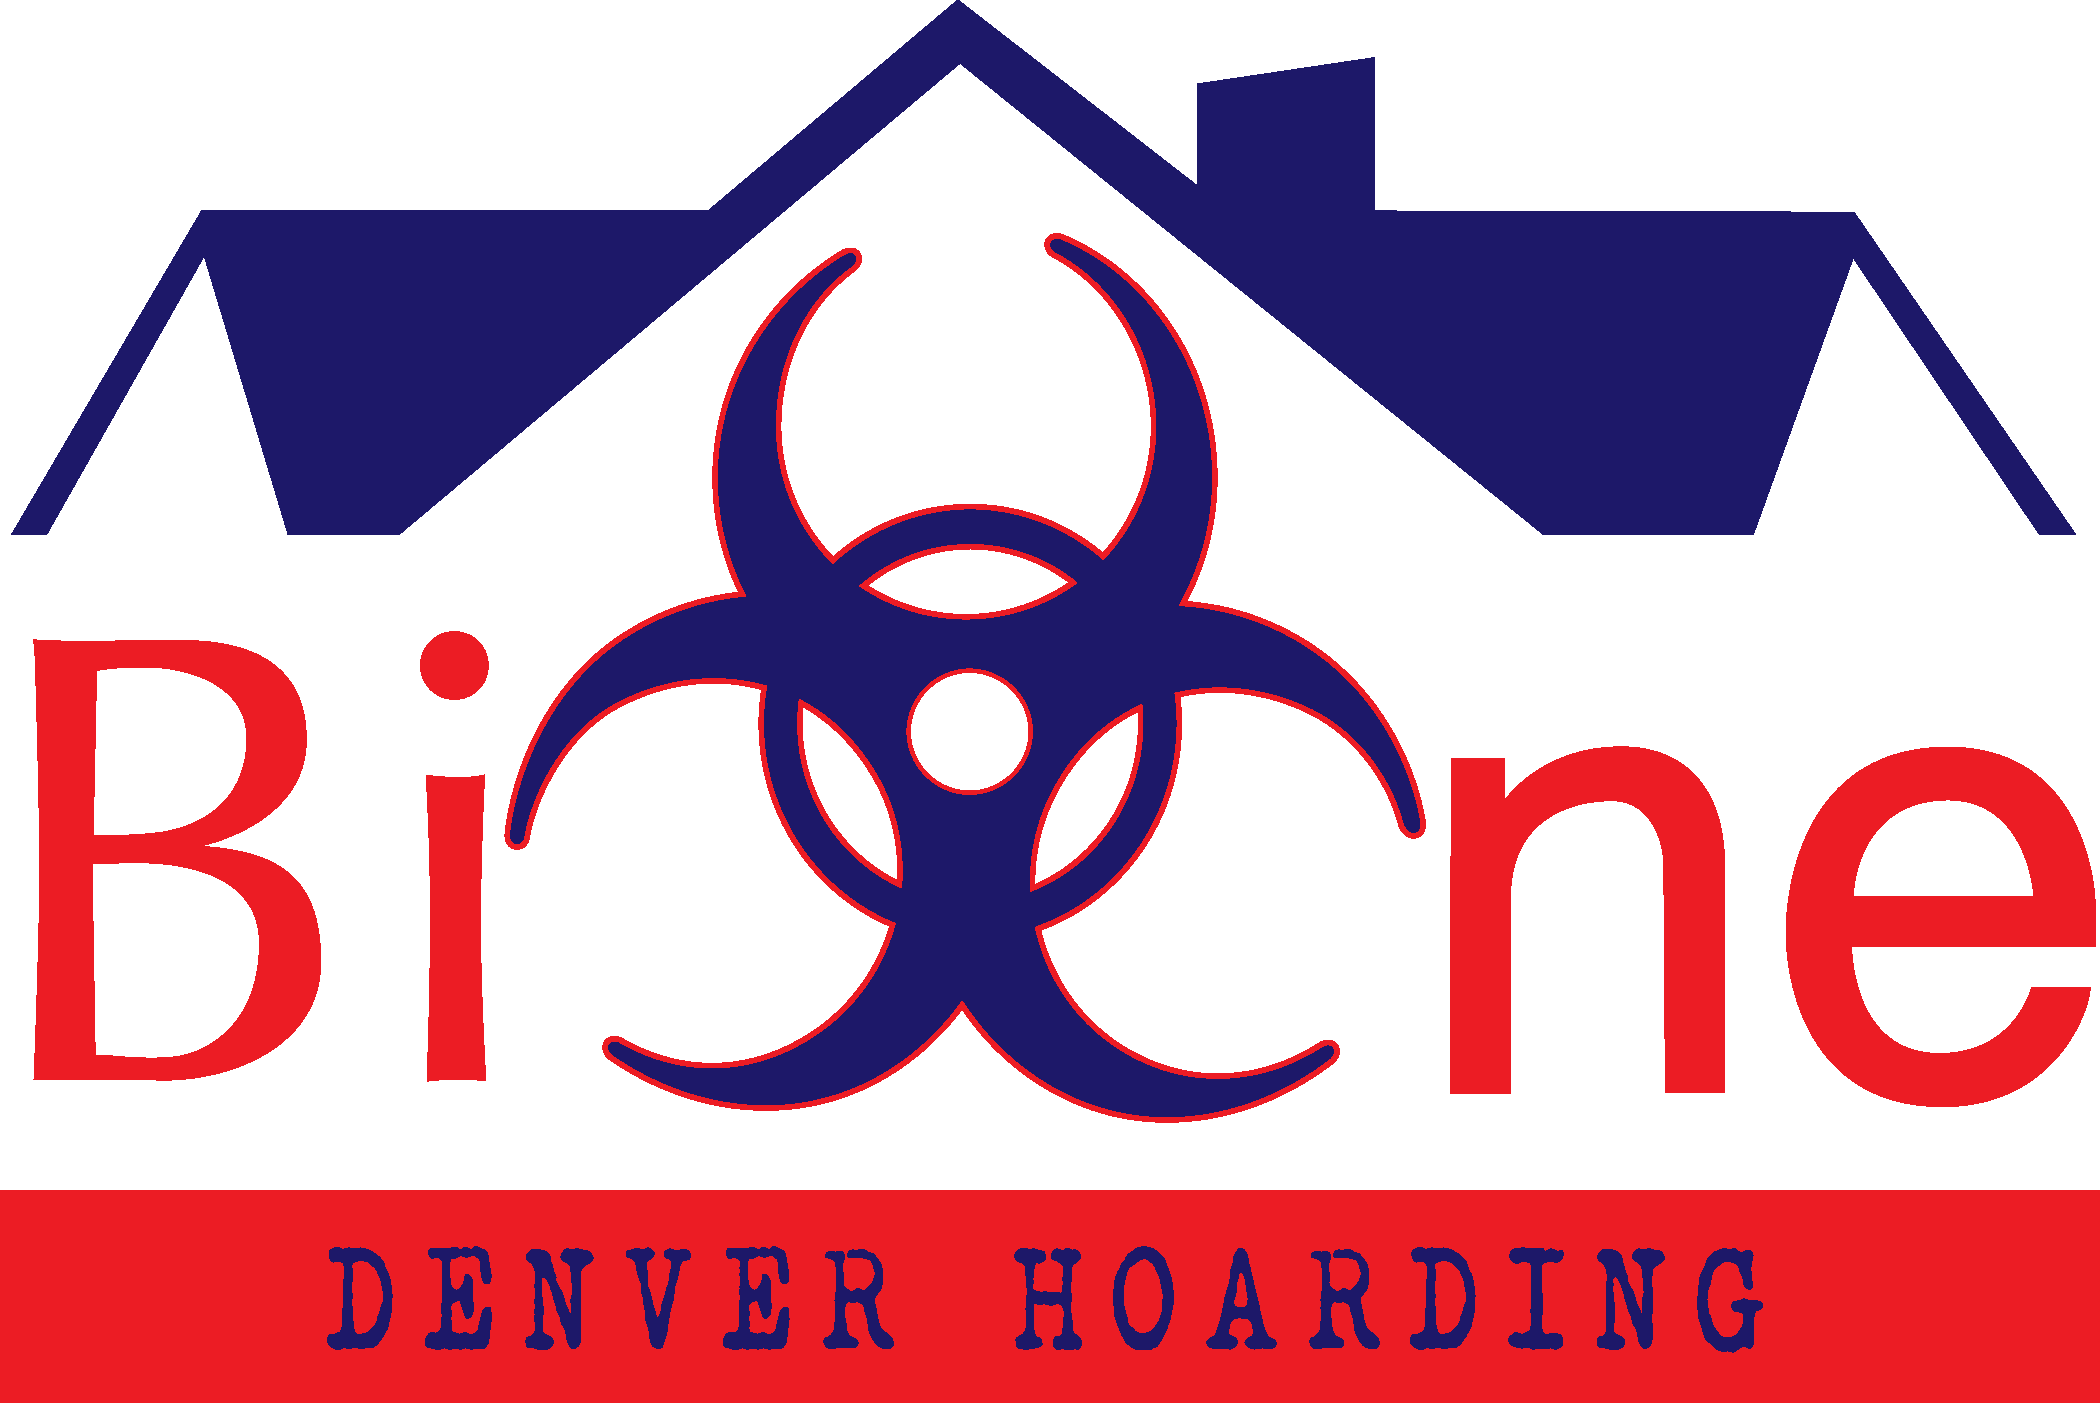 Denver Hoarding